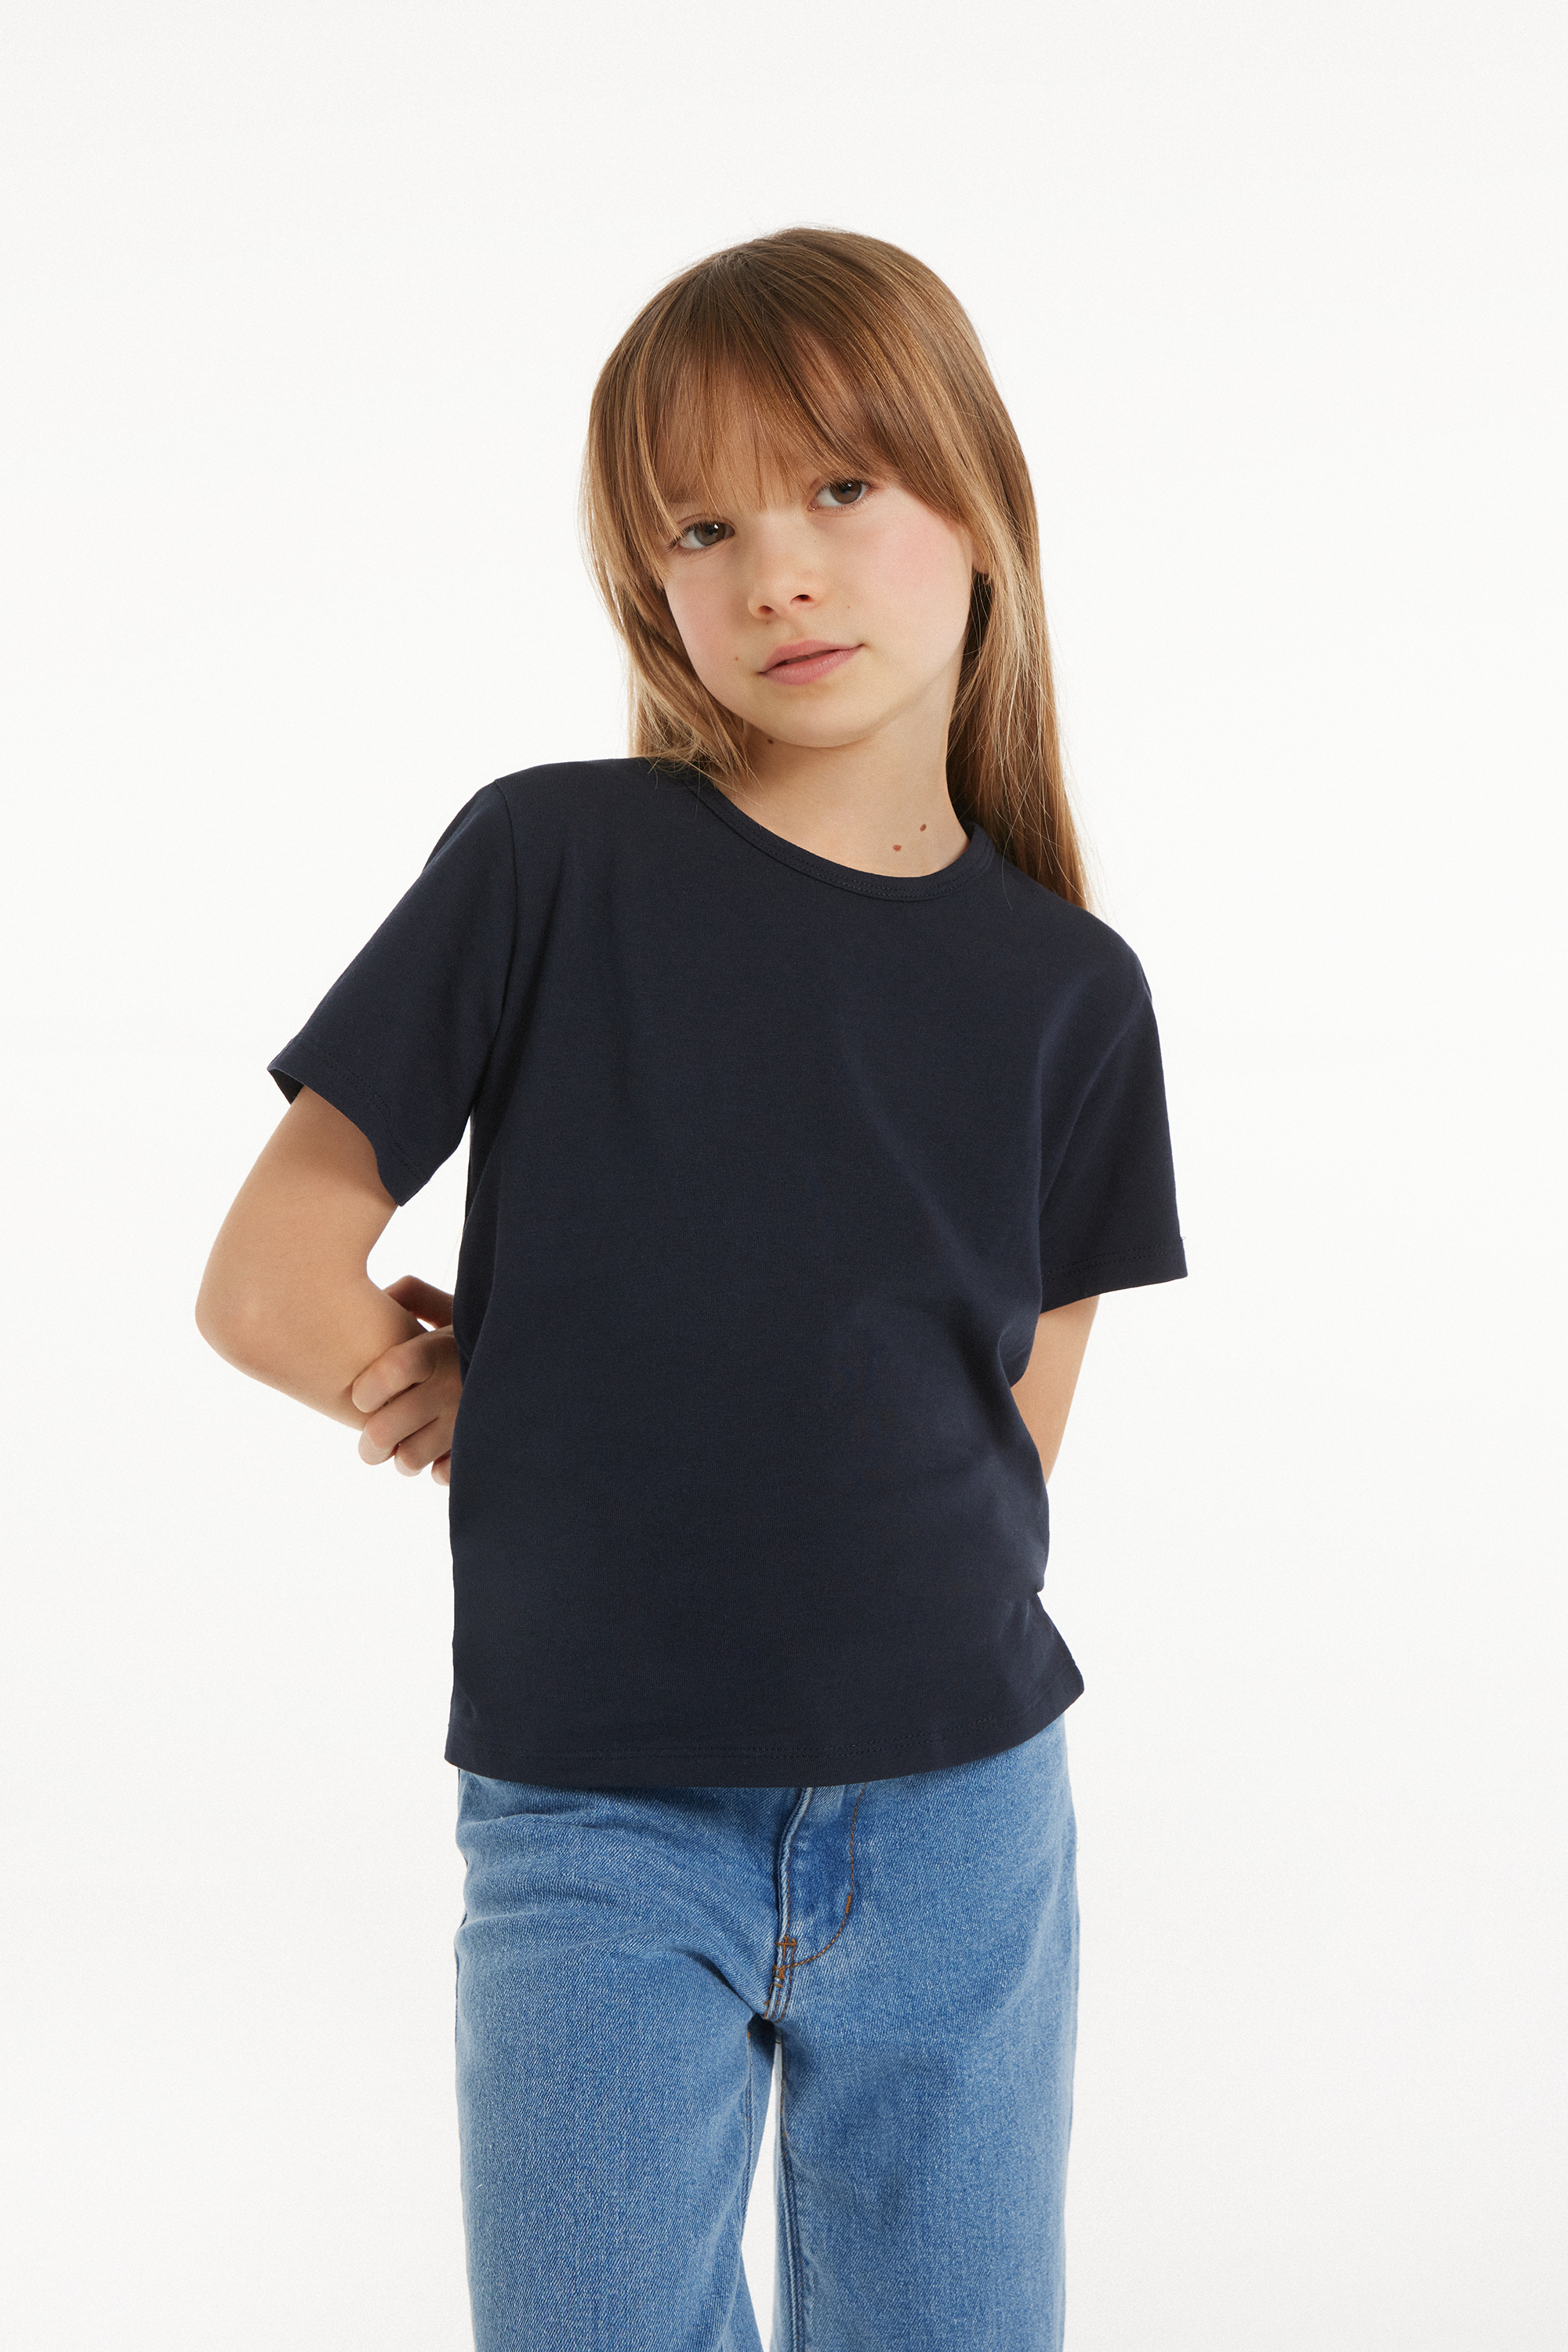 Camiseta Basic Cuello Redondo de Algodón Elástico Niños Unisex